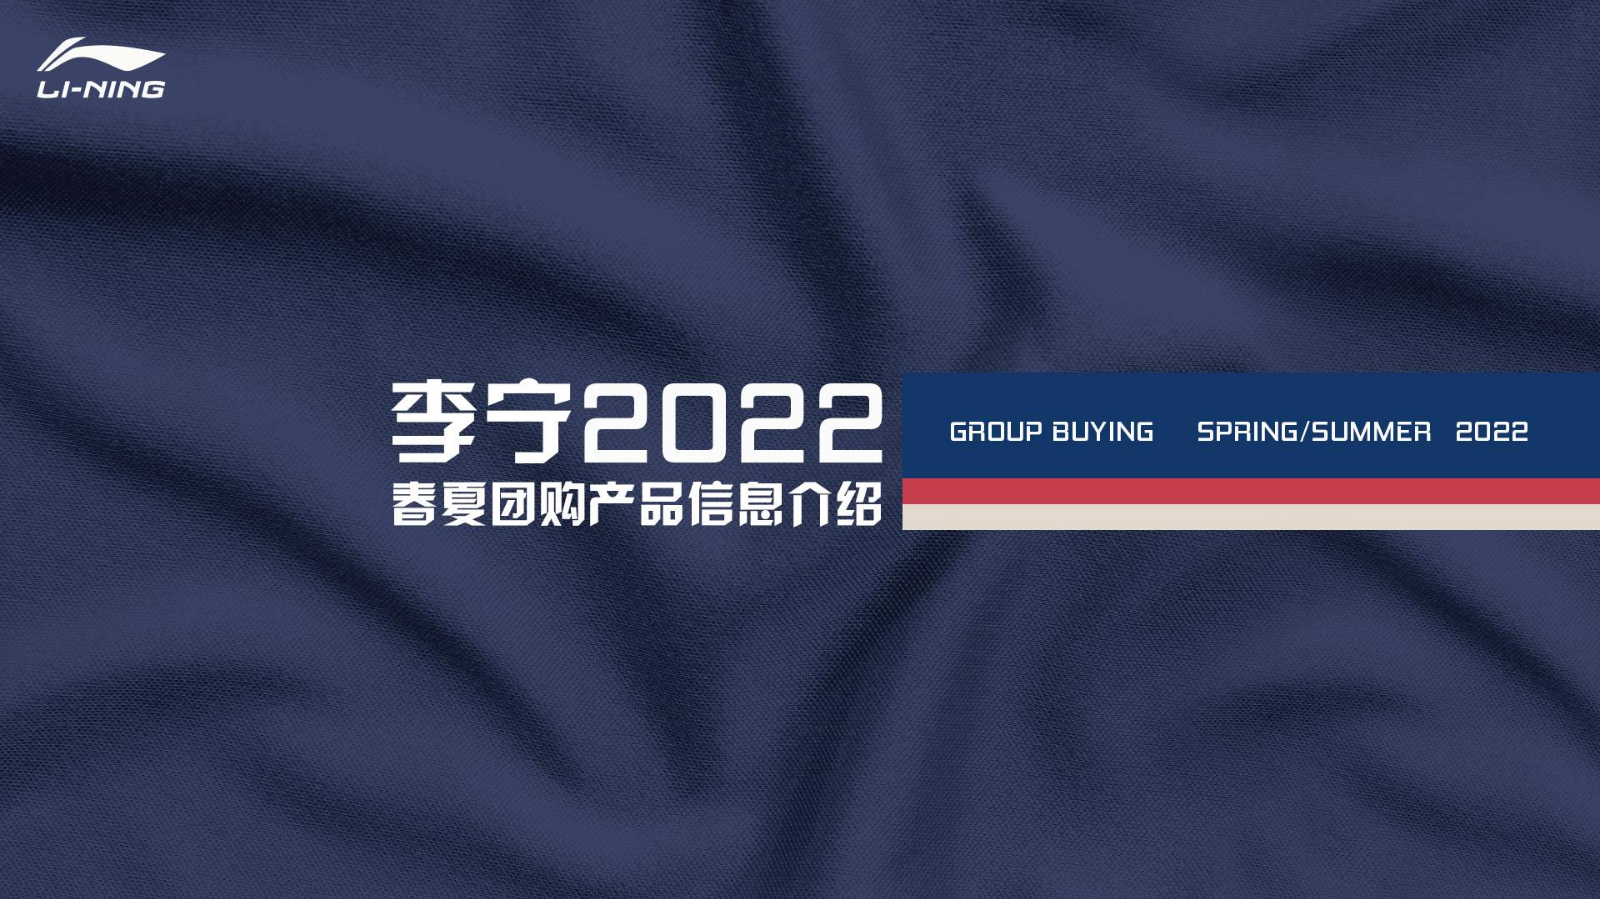 2022年李宁团购春夏产品信息介绍.2021-12-24